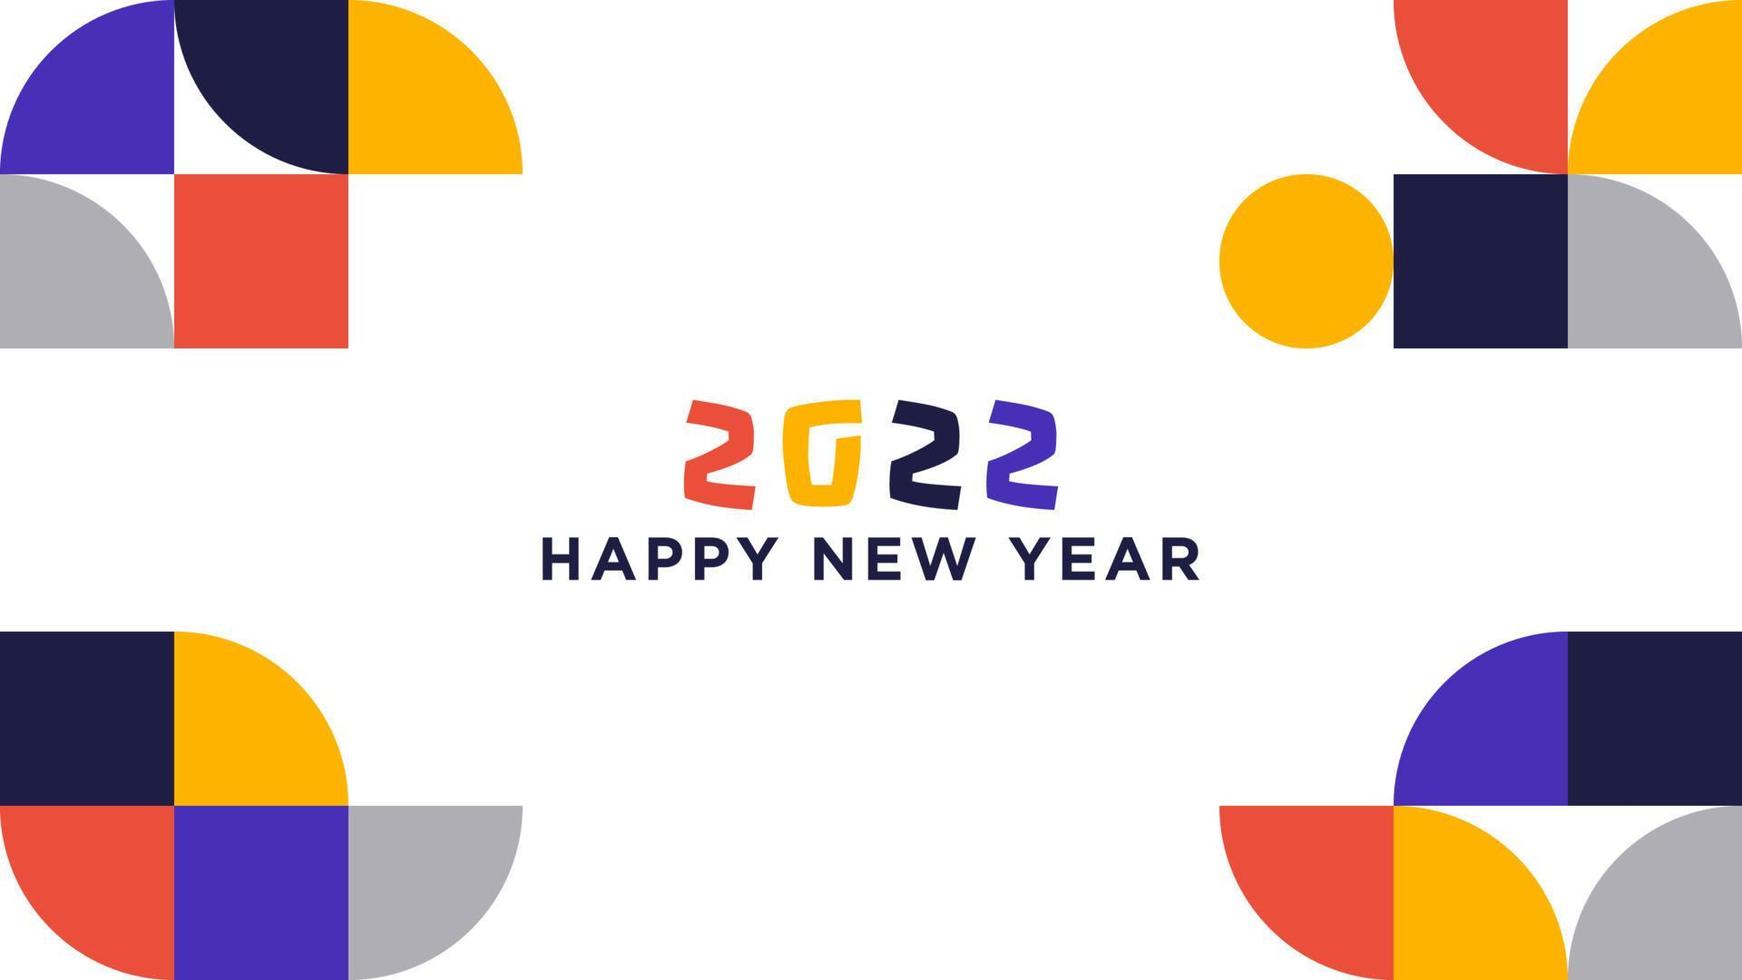 modelo de plano de fundo de feliz ano novo 2022. fundo geométrico bauhaus abstrato com saudações de feliz ano novo 2022 vetor